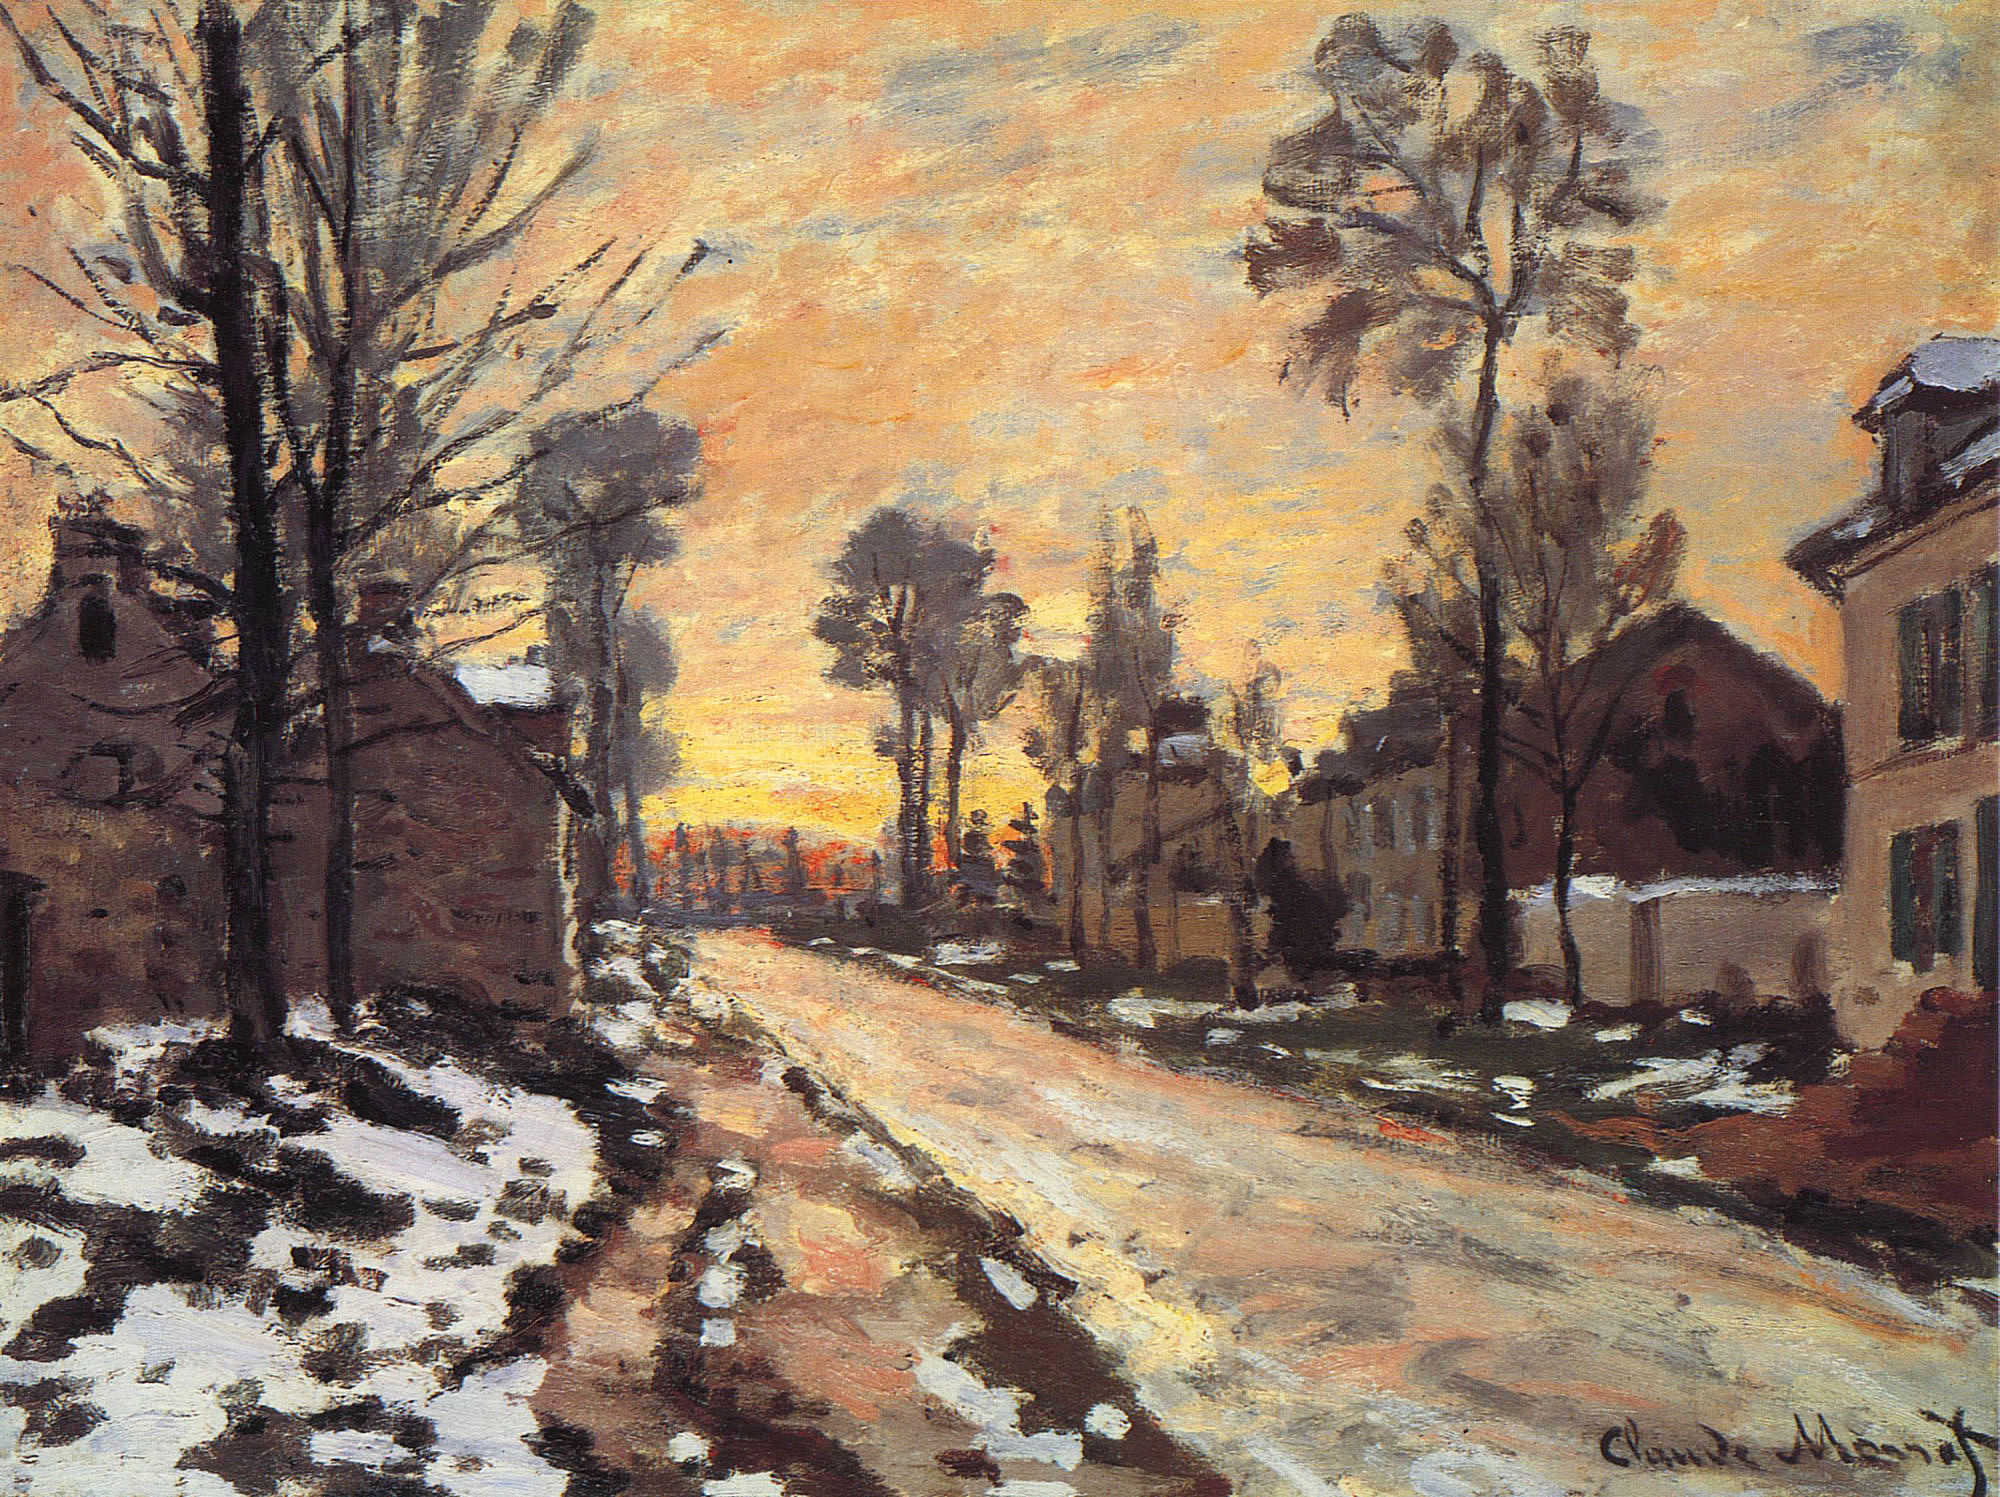 油画,清新的冷灰调子,跟印象派大师莫奈学习画冬天的风景